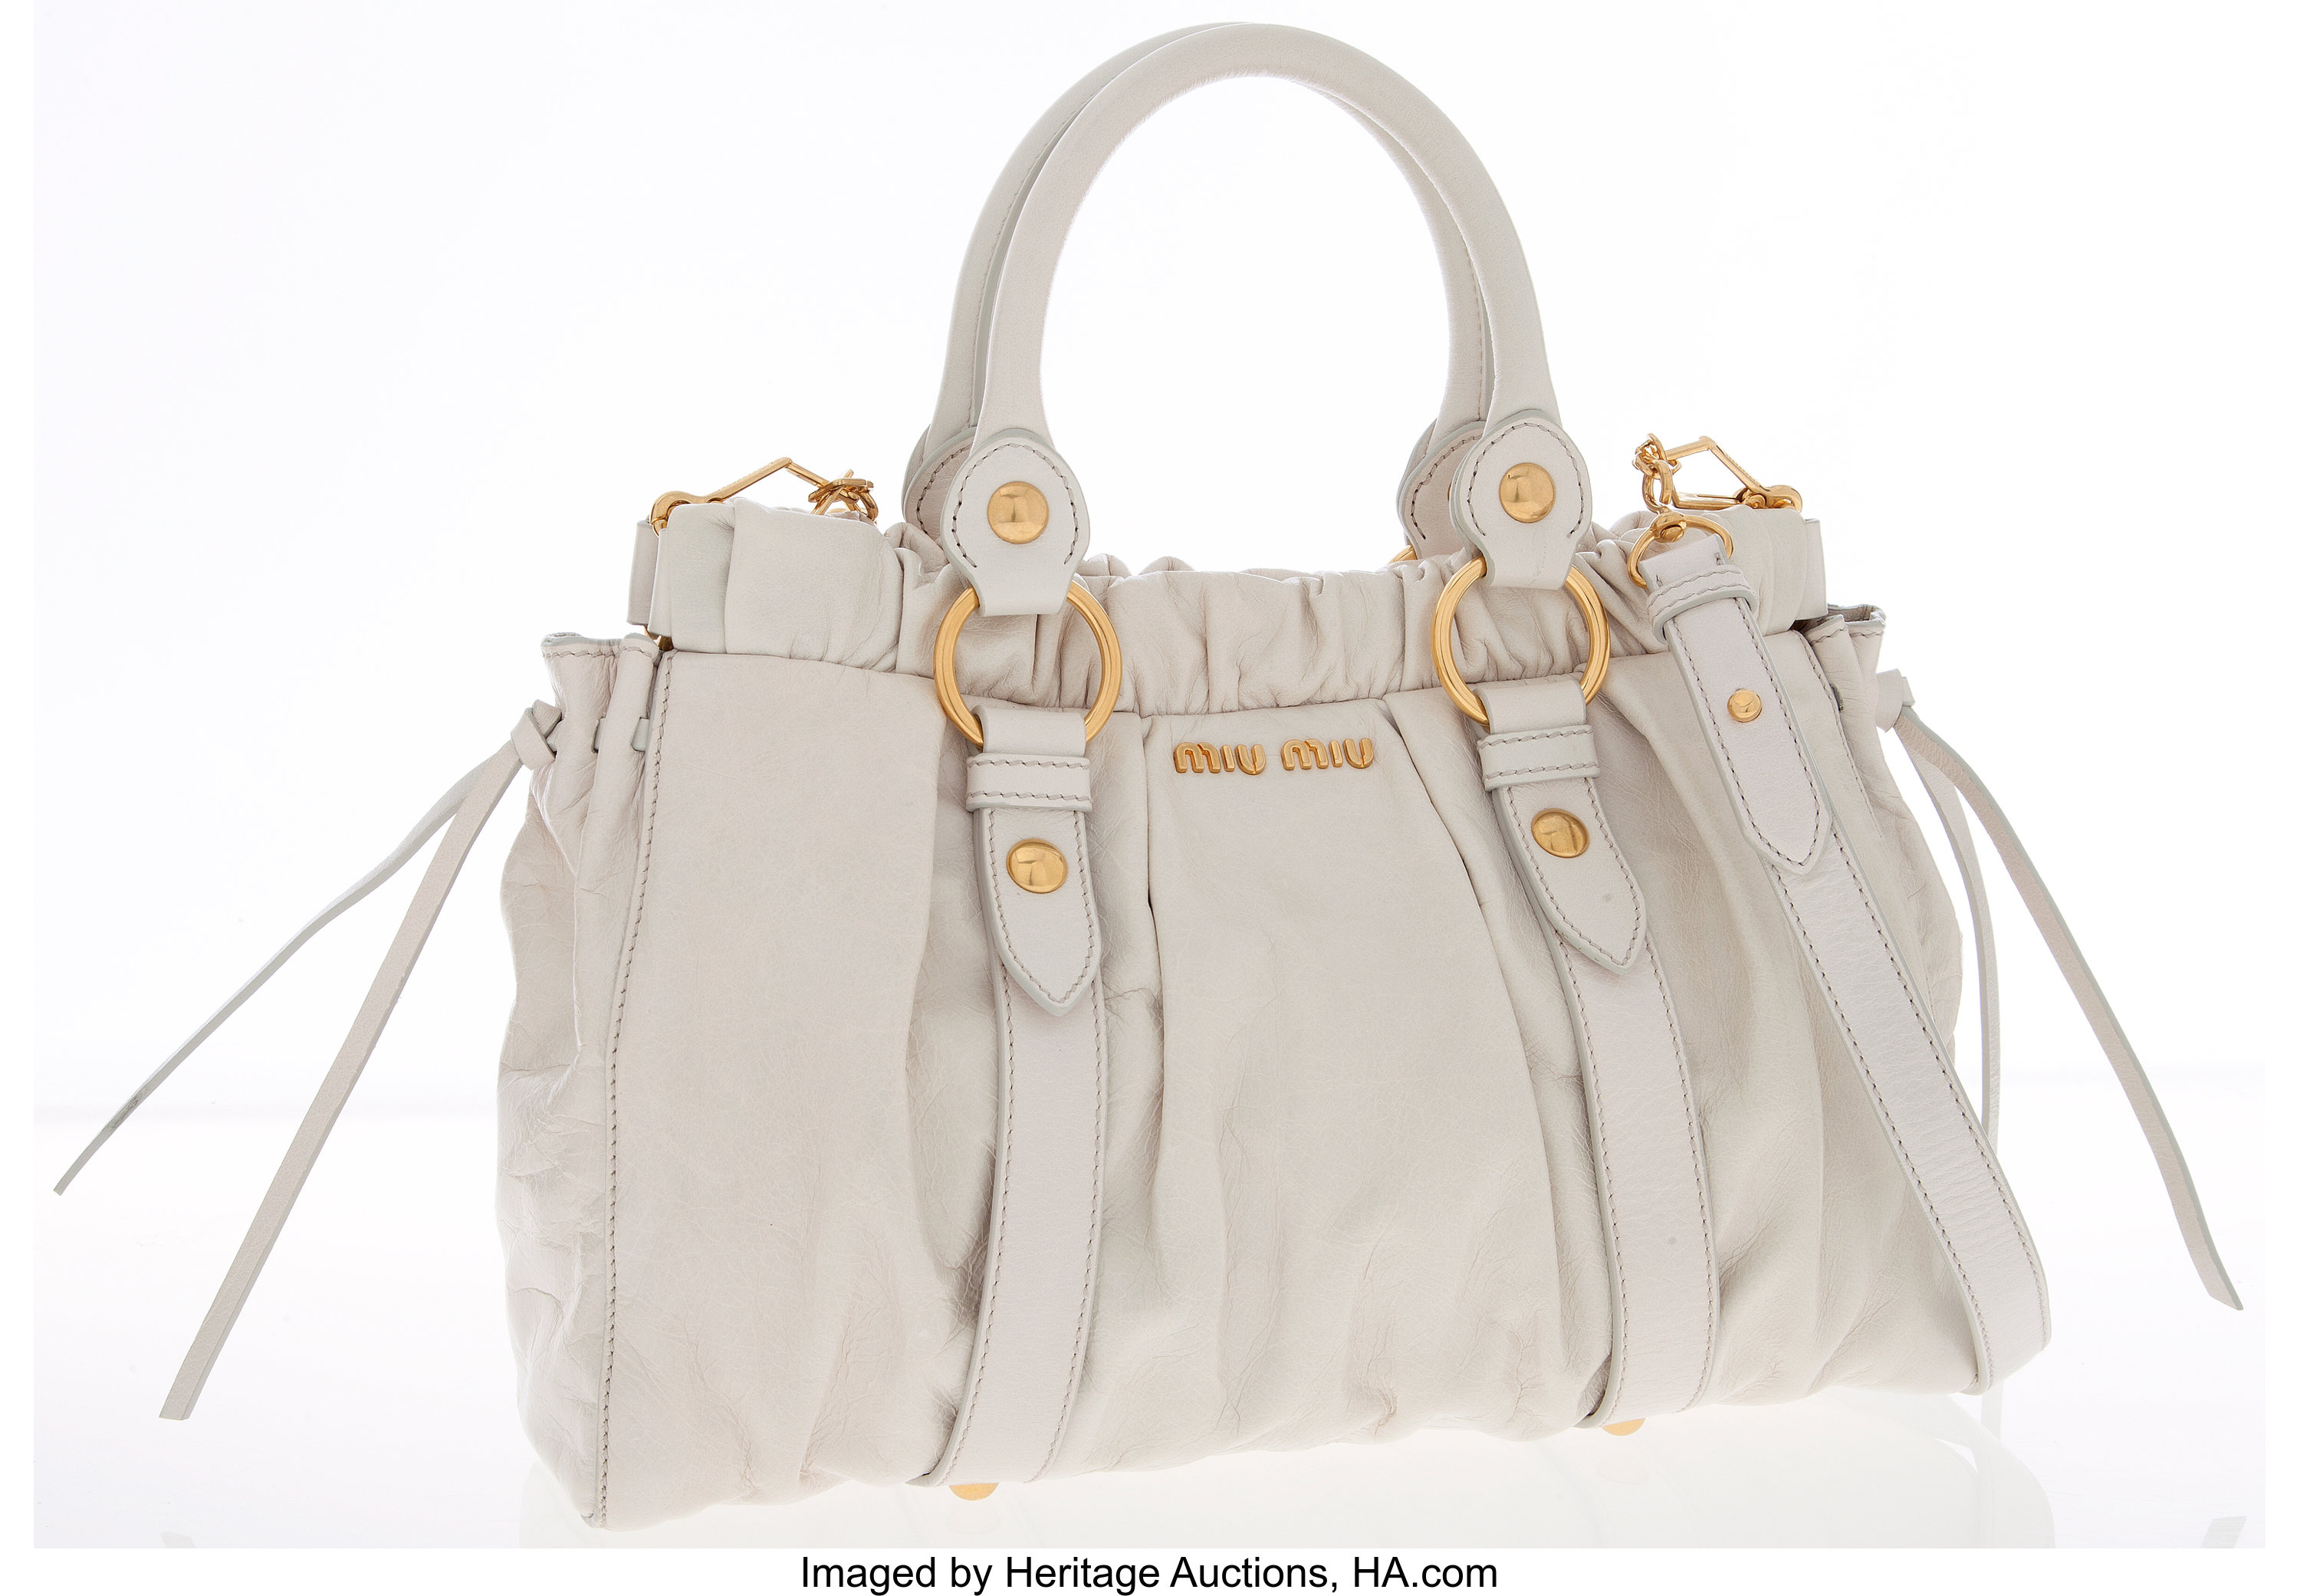 Miu Miu, Bags, Miu Miu Medium Nude Top Handle Leather Bag